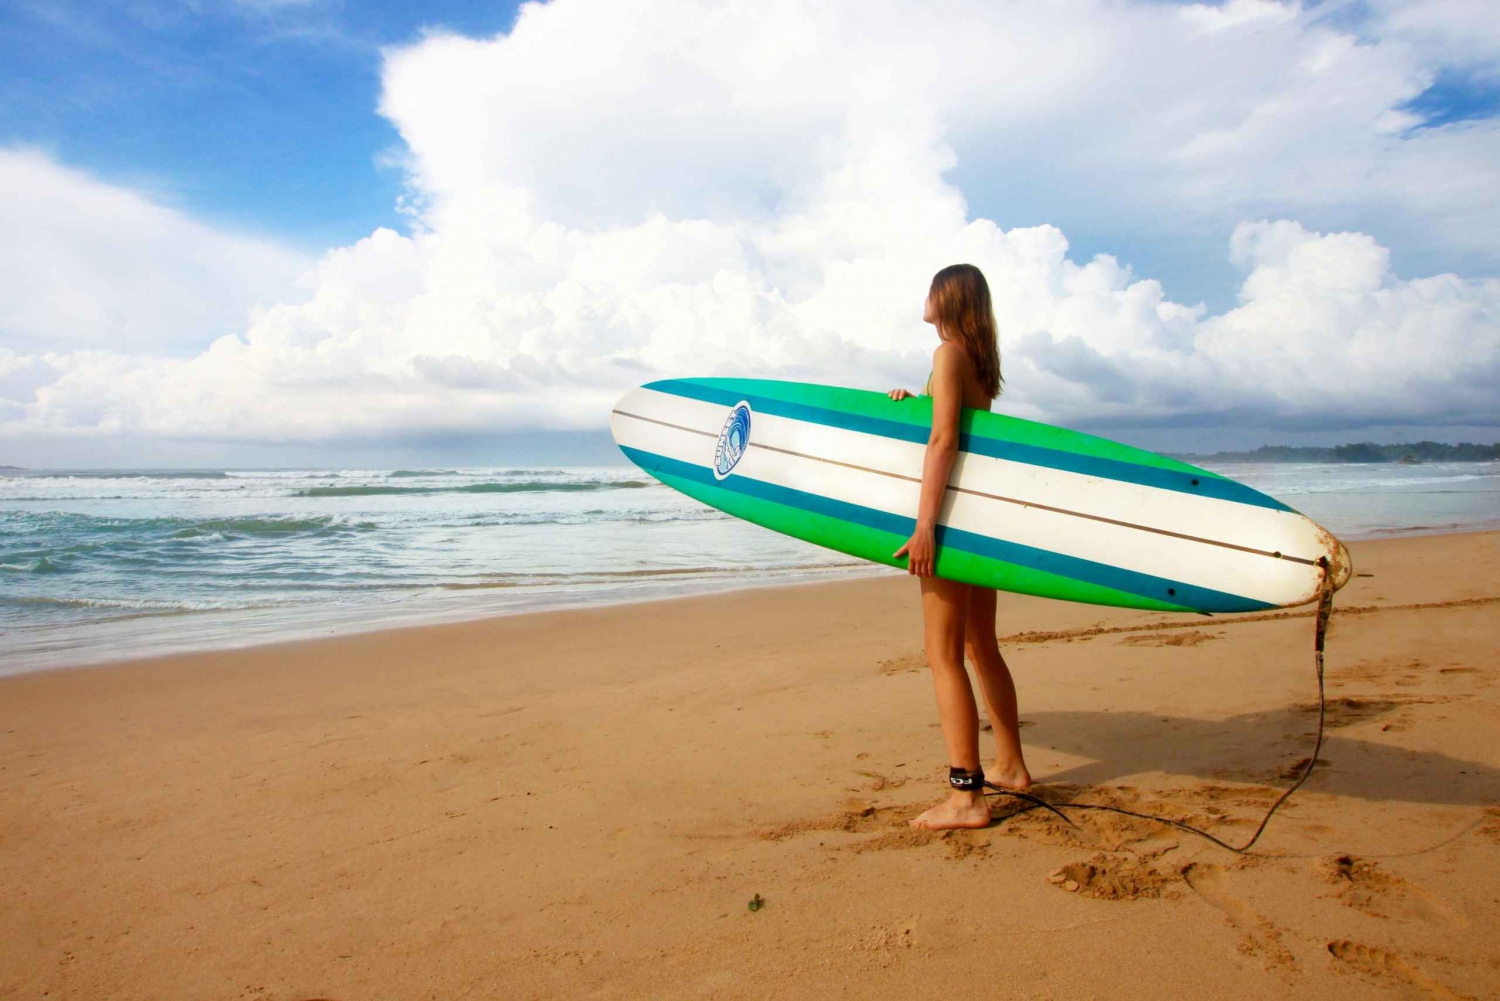 Corso di surf - Onde perfette per principianti e avanzati